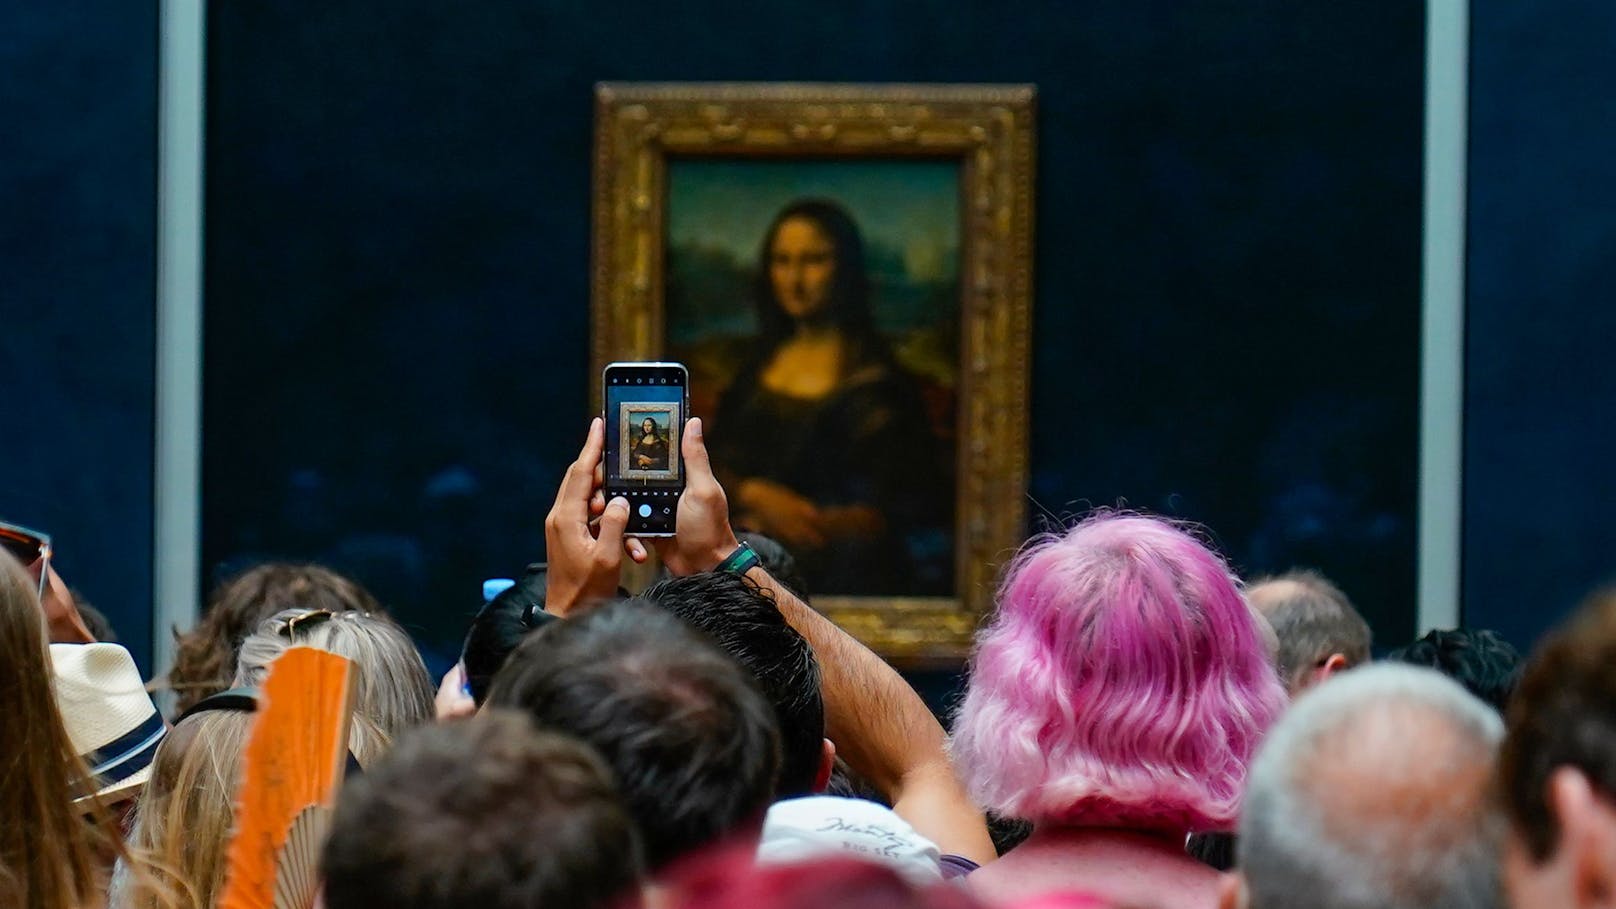 Aktivisten attackieren Mona Lisa mit orangener Suppe